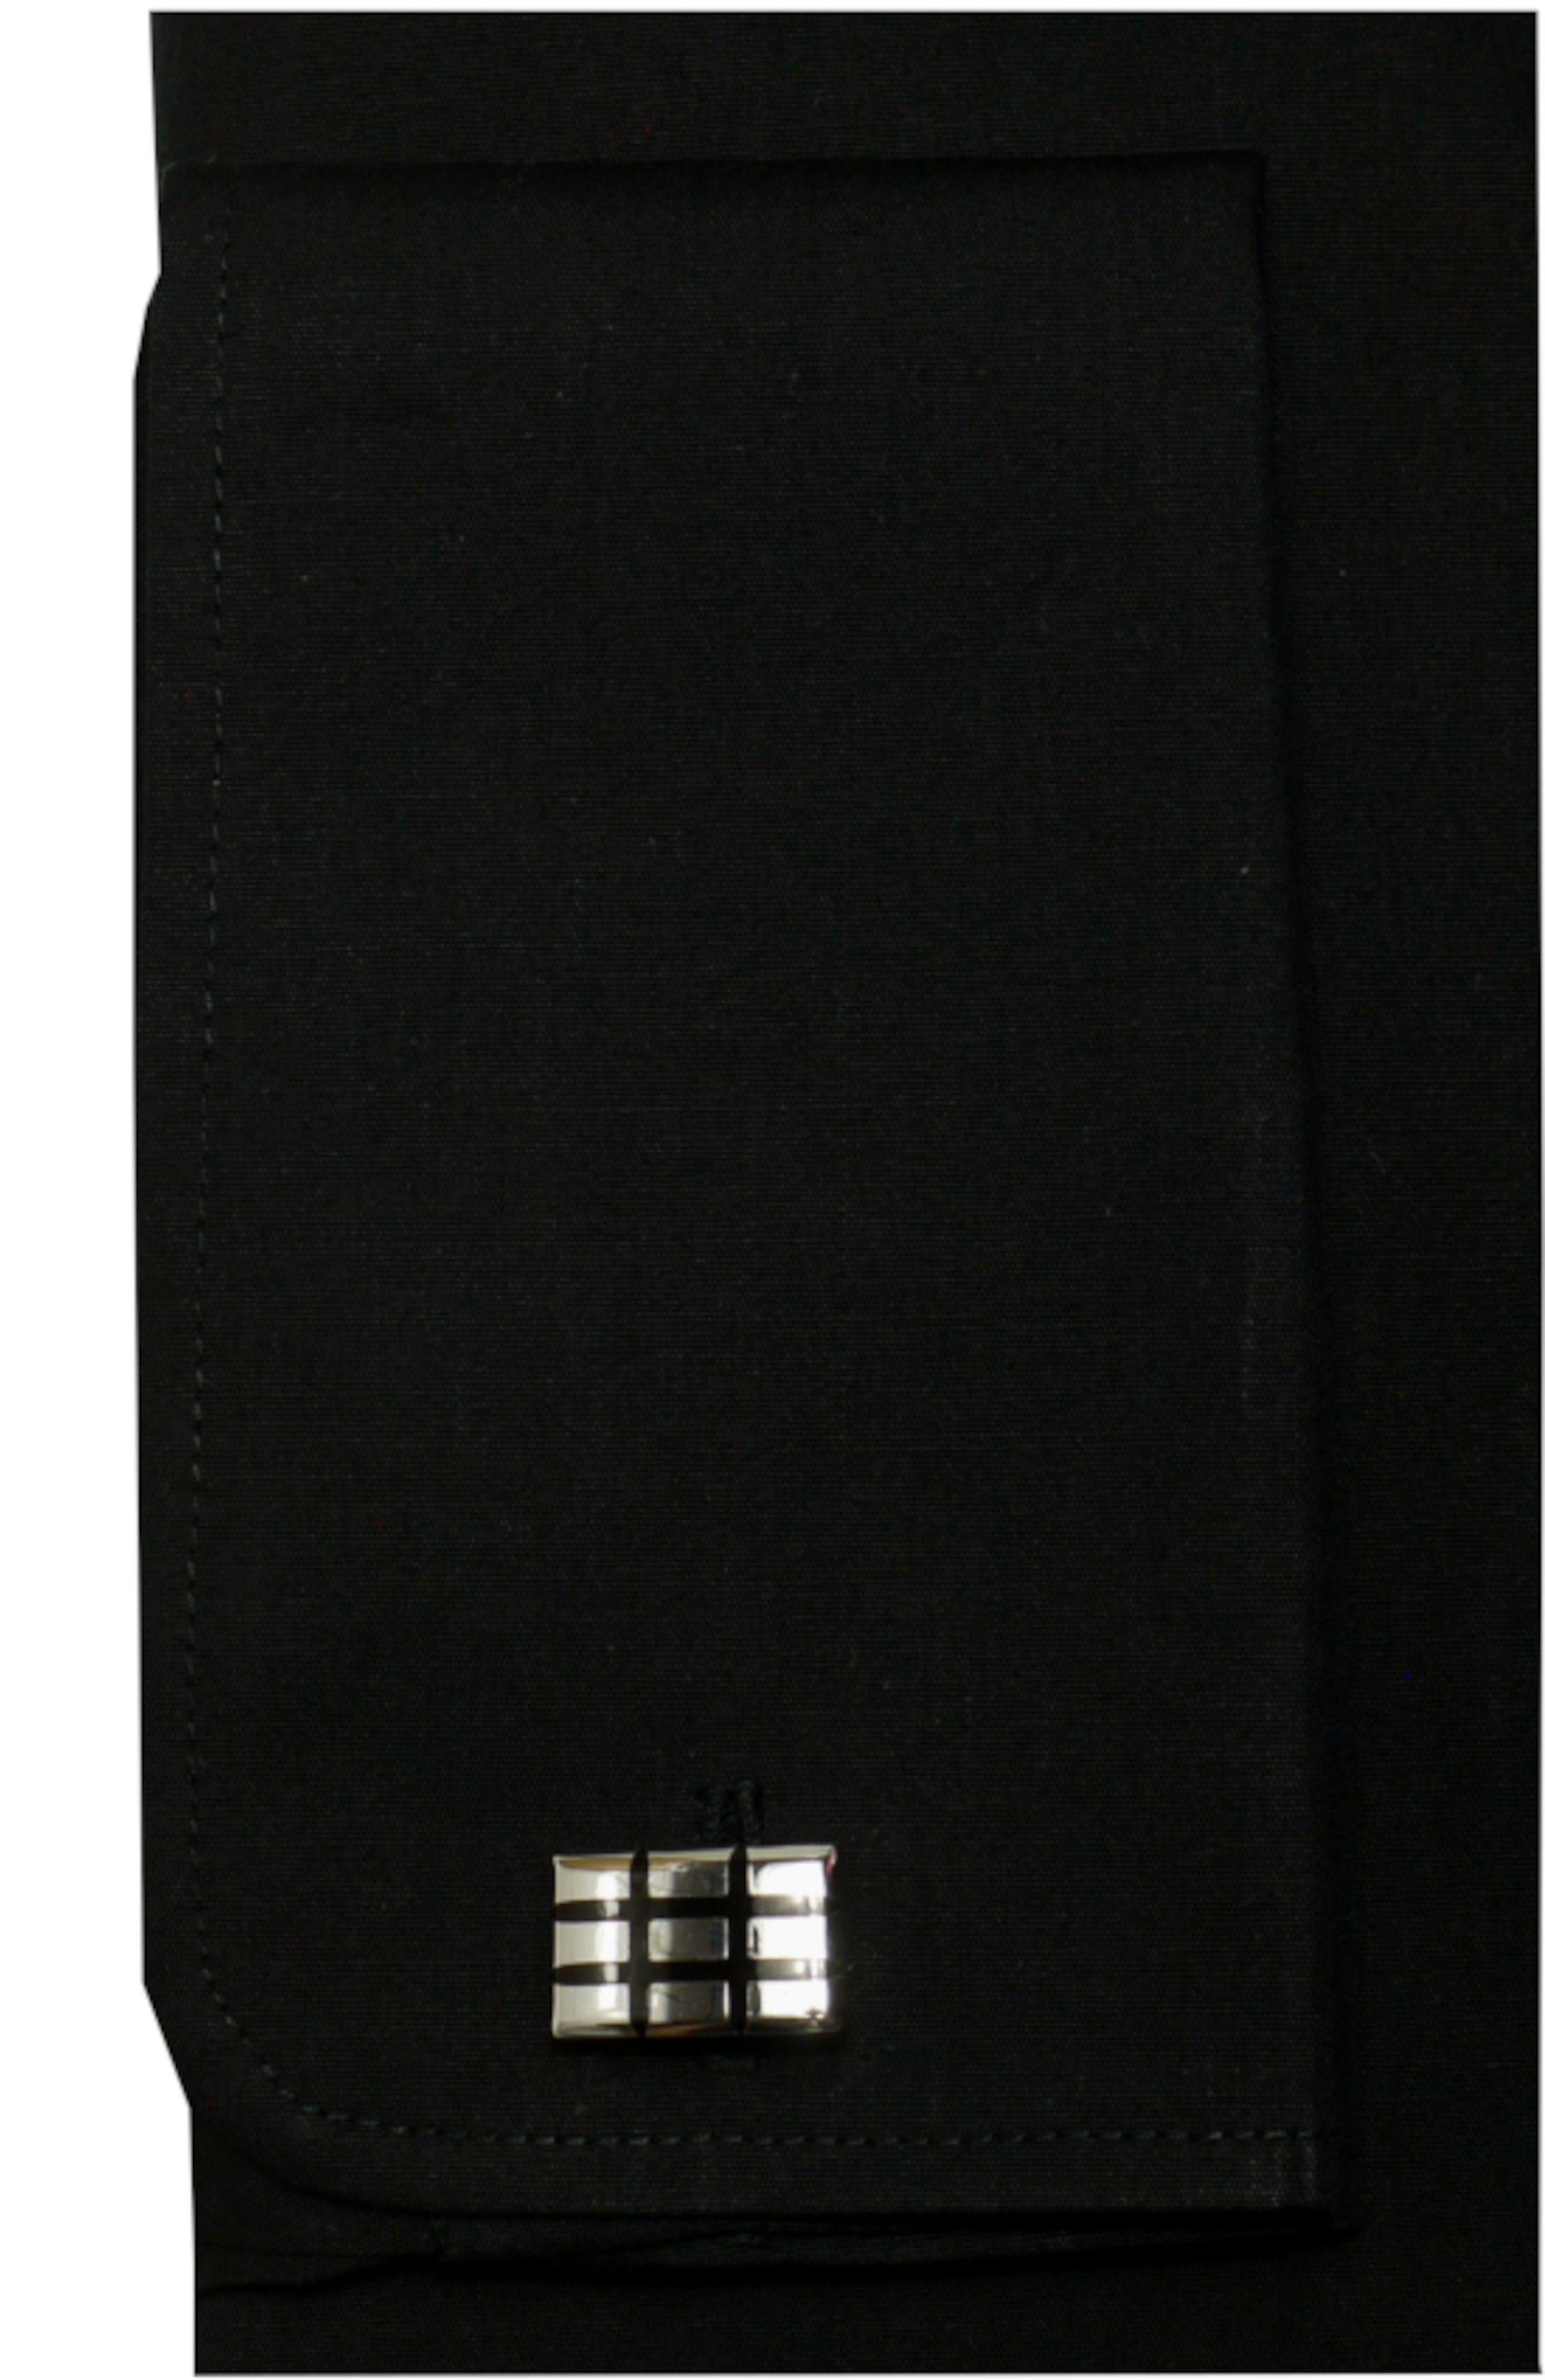 Huber schwarz Fit Plissee, Regular HU-0171 Kläppchen-Kragen, Umschlag-Manschette, Hemden Smokinghemd